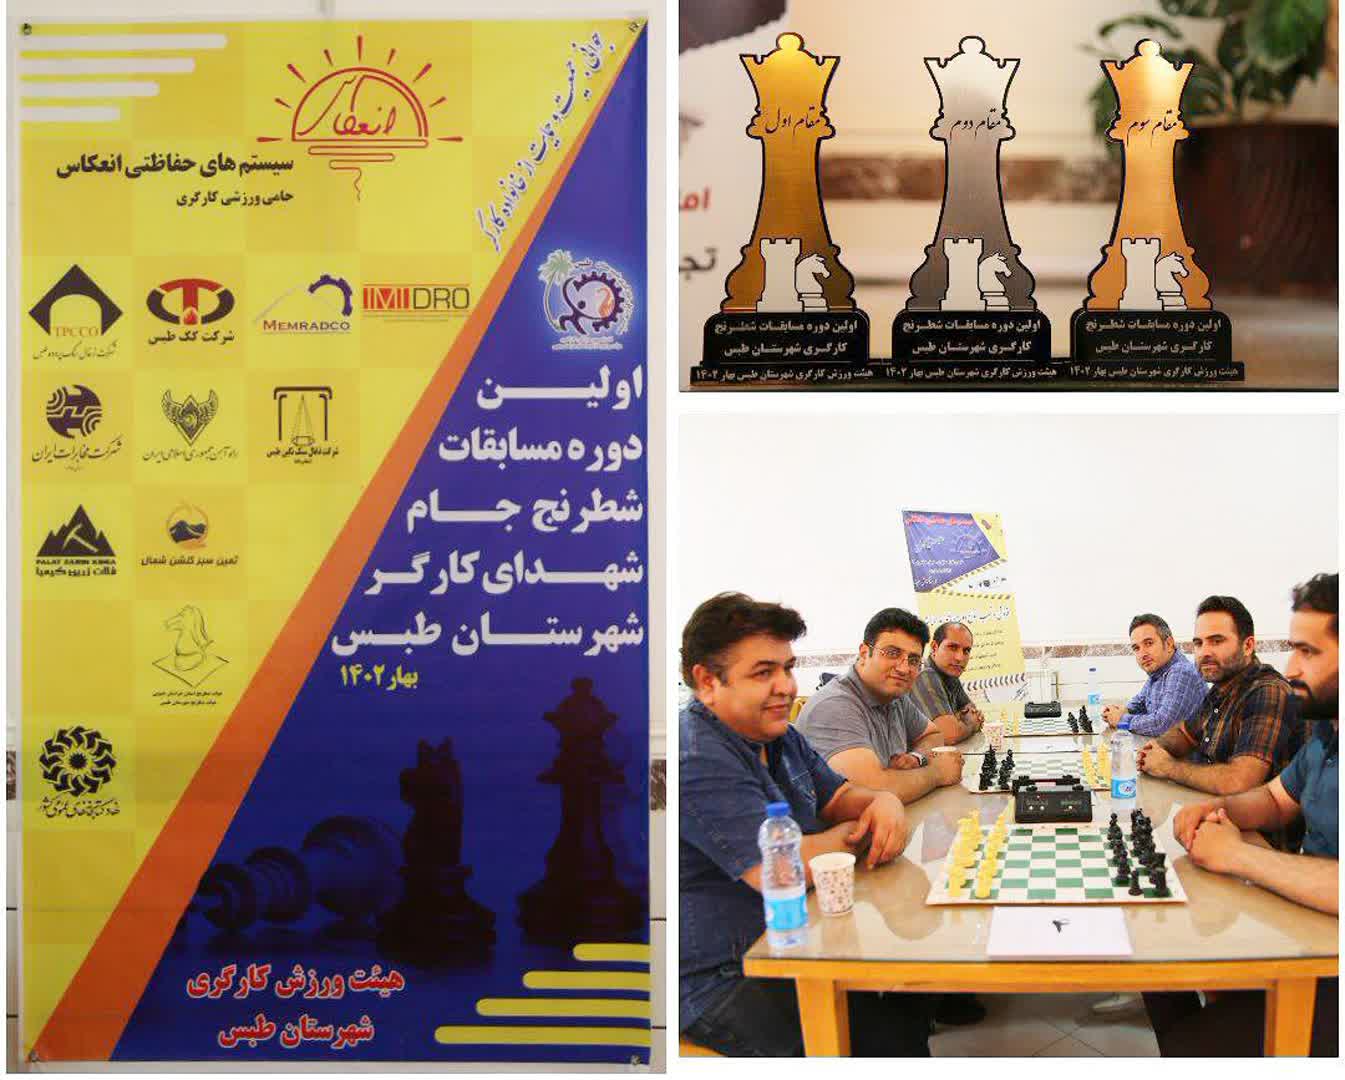 کزغال، نائب قهرمان مسابقات شطرنج کارگری شهرستان طبس